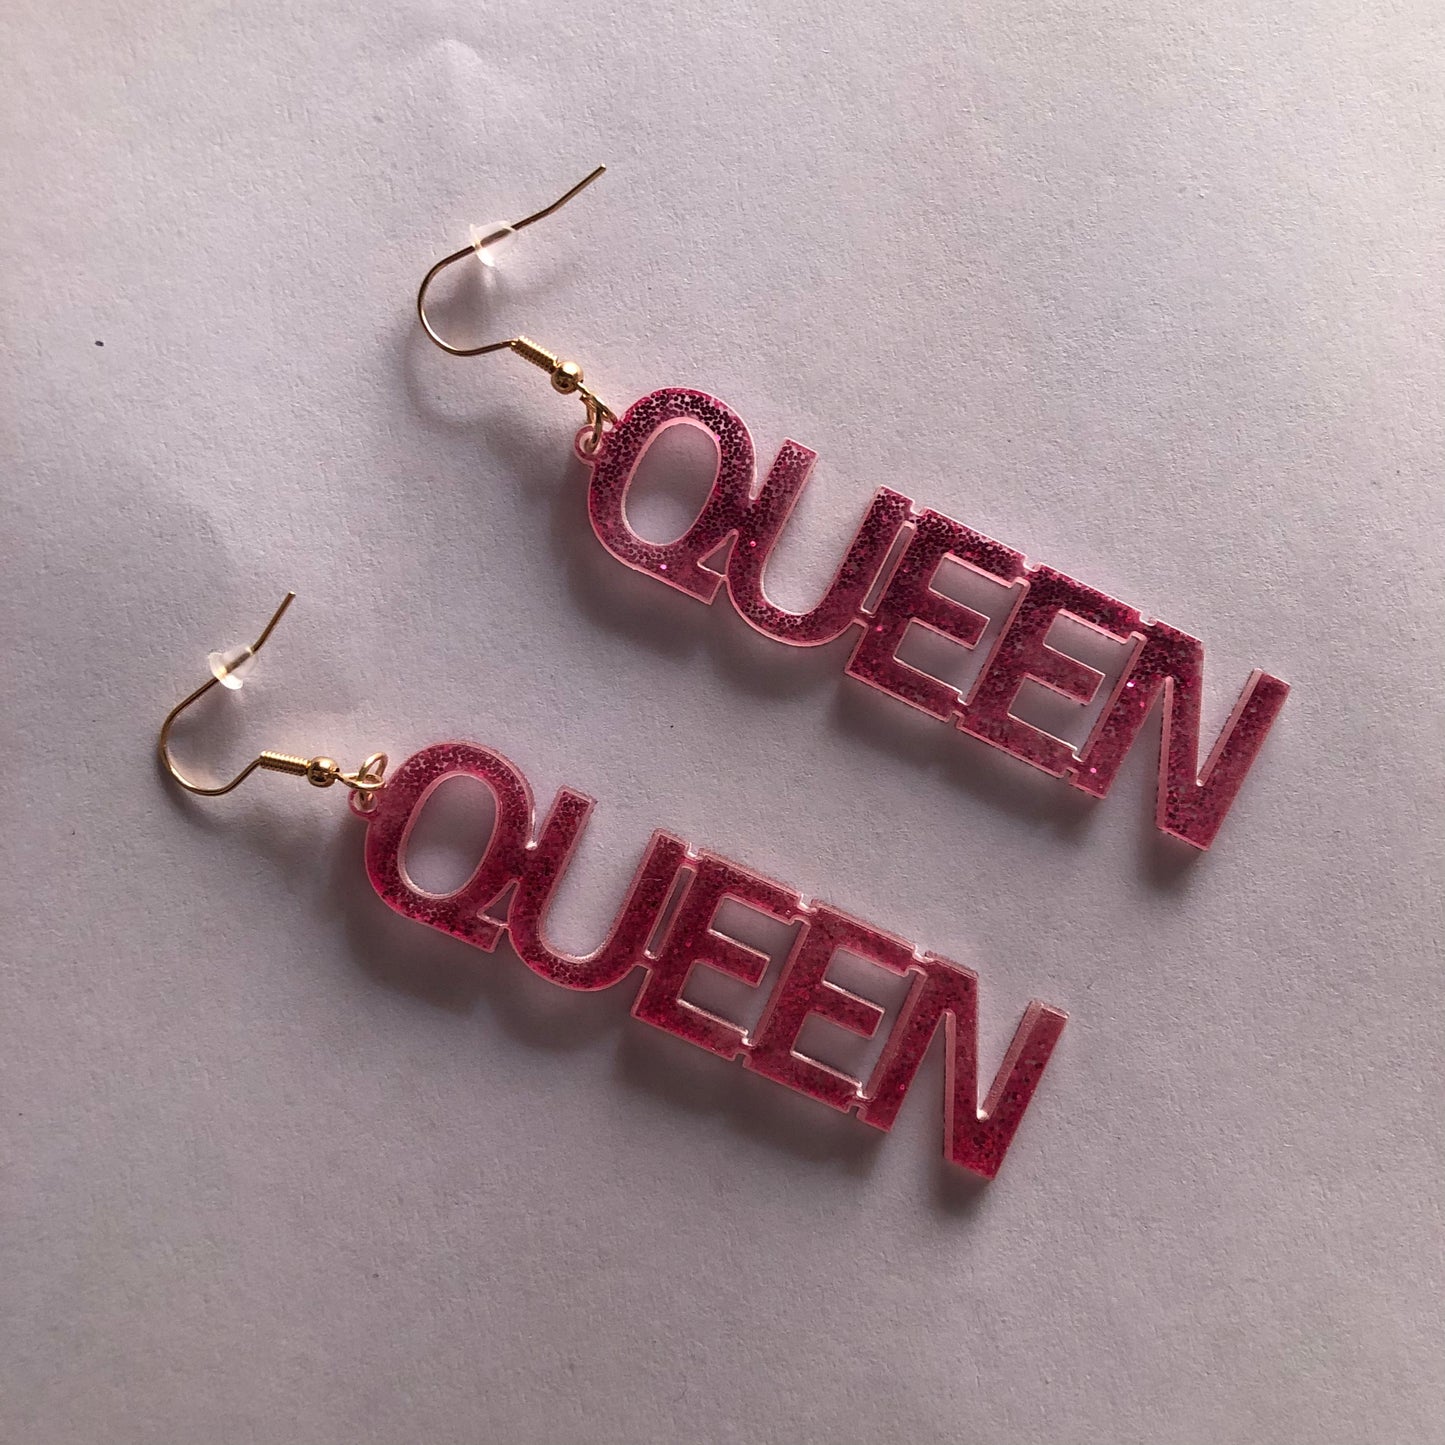 Queen y2k earrings